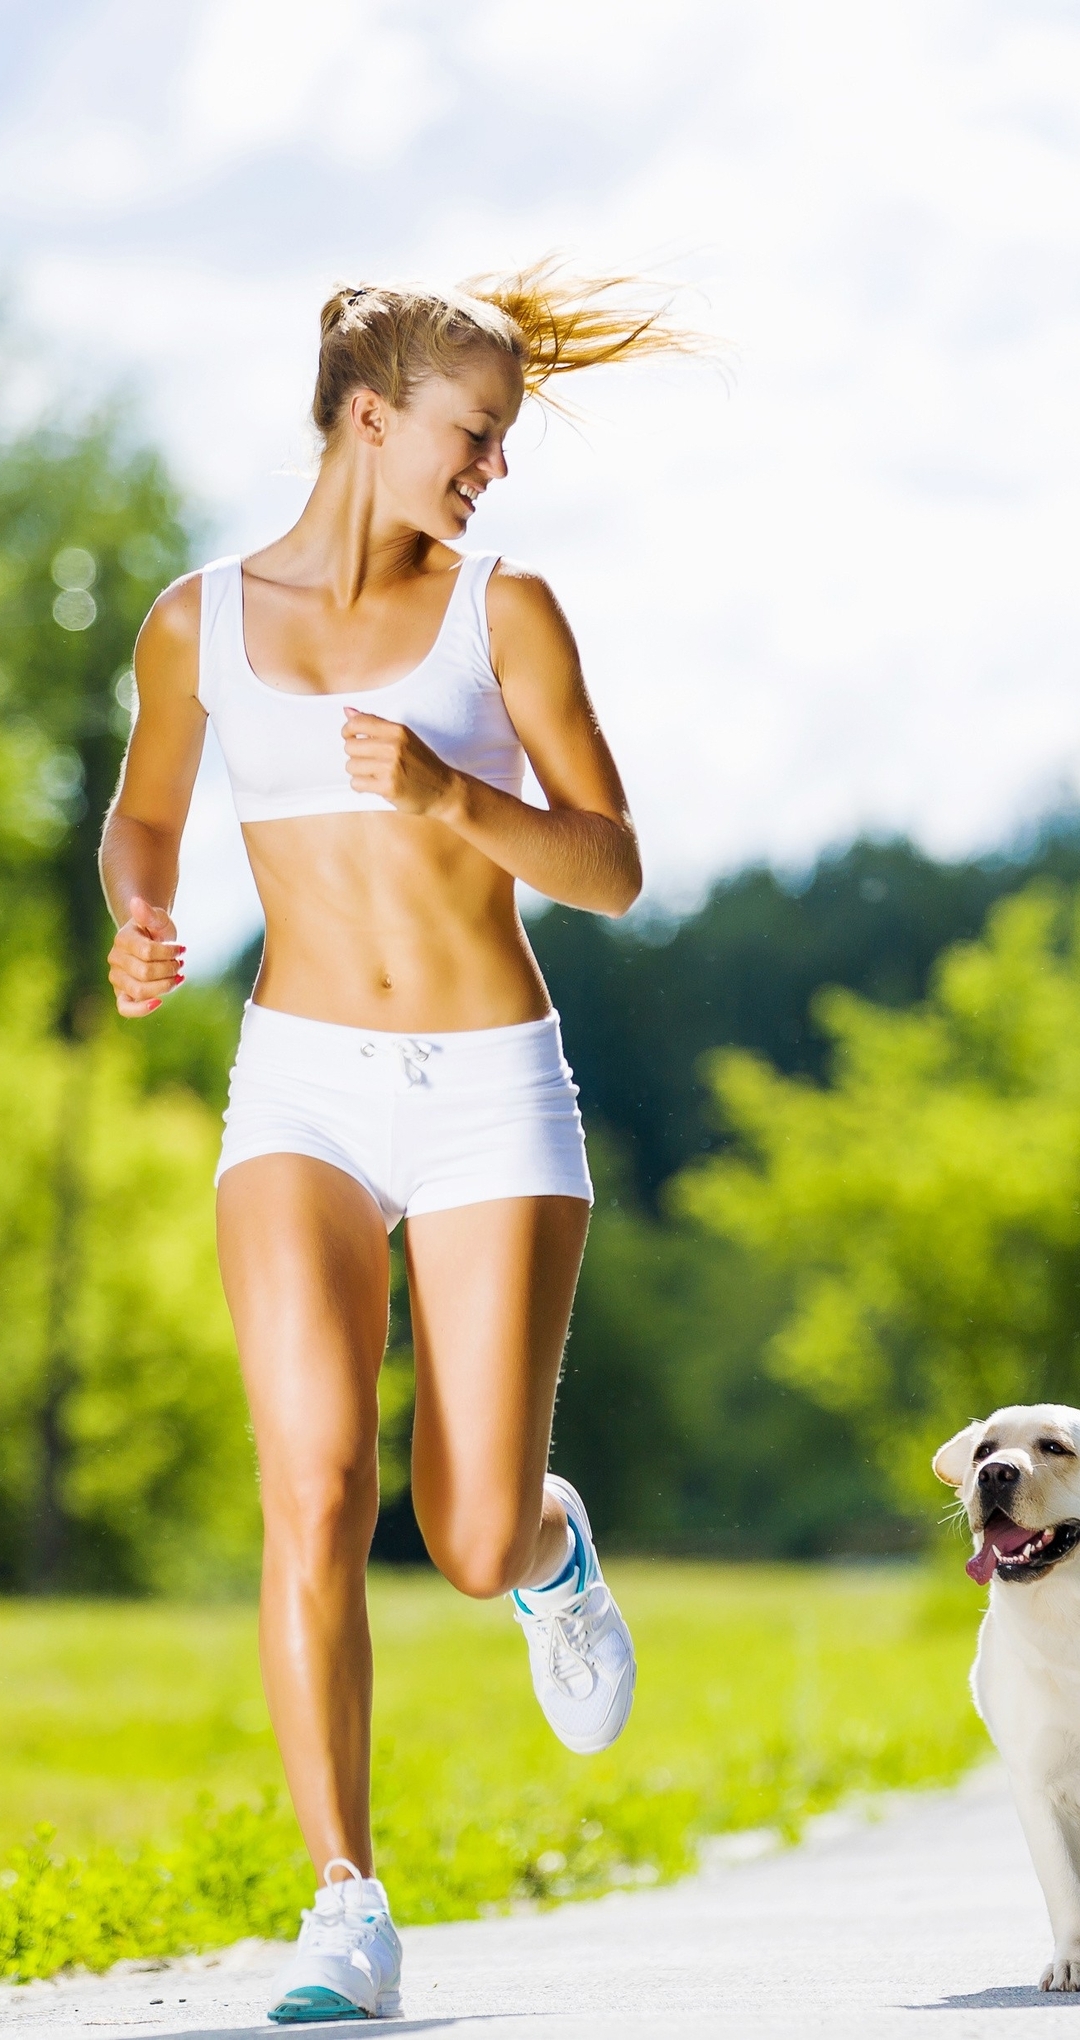 Картинка: Пробежка, бег, девушка, собака, деревья, парк, утро